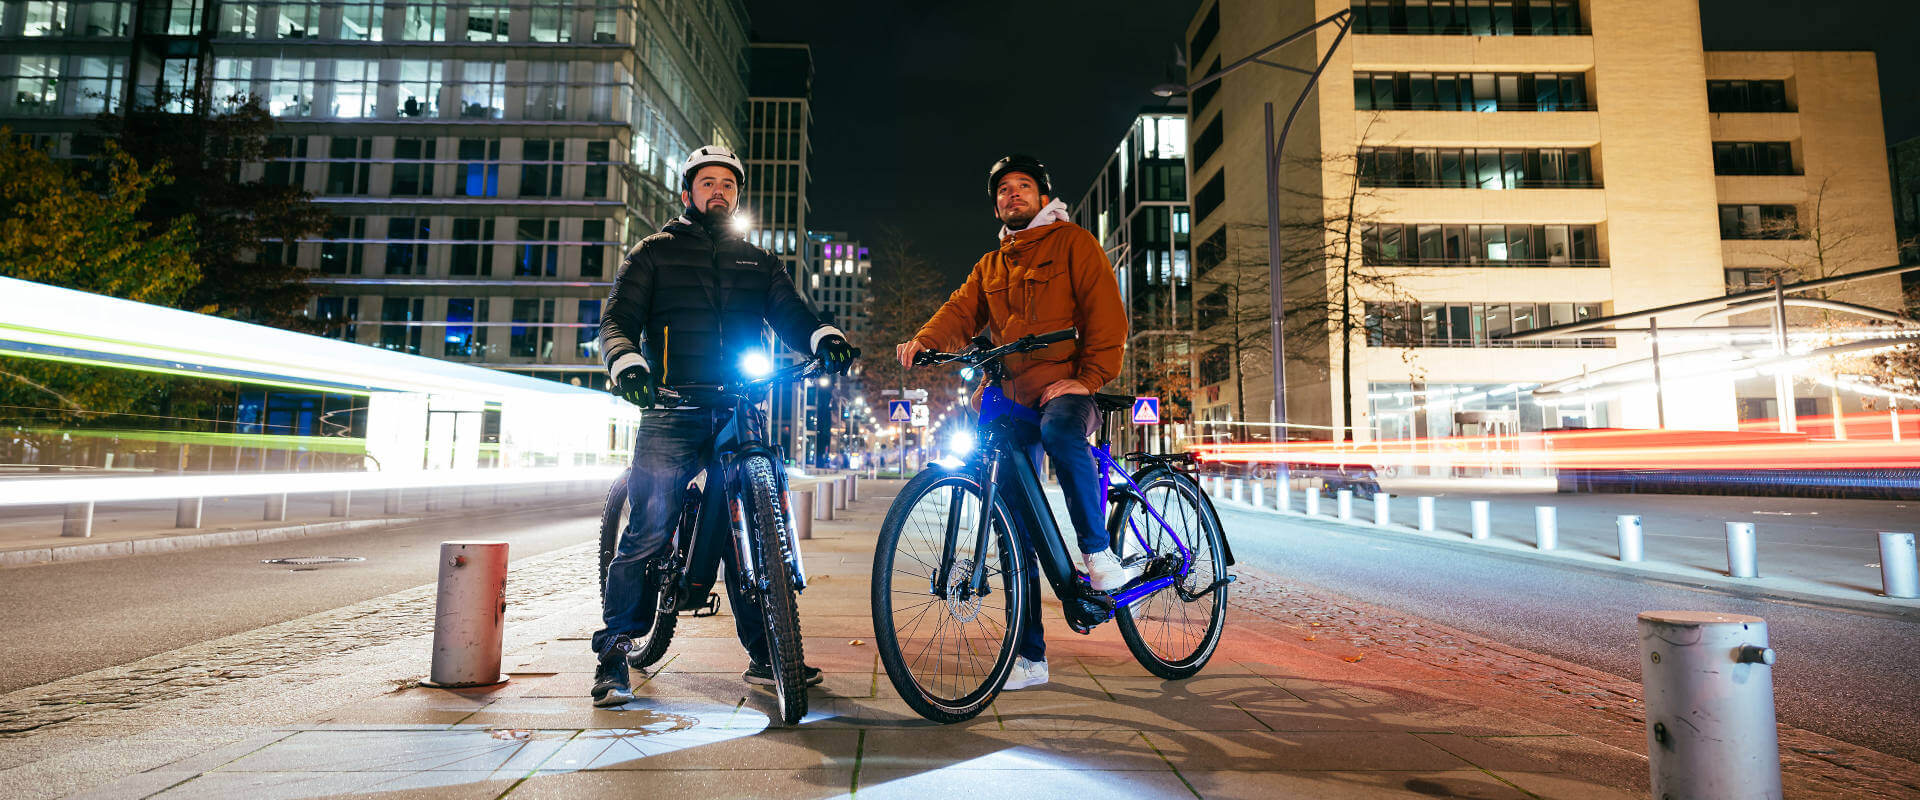 Umoderne Foragt pelleten Mærk spændingen ved at cykle i byen om natten | Shimano Lifestyle